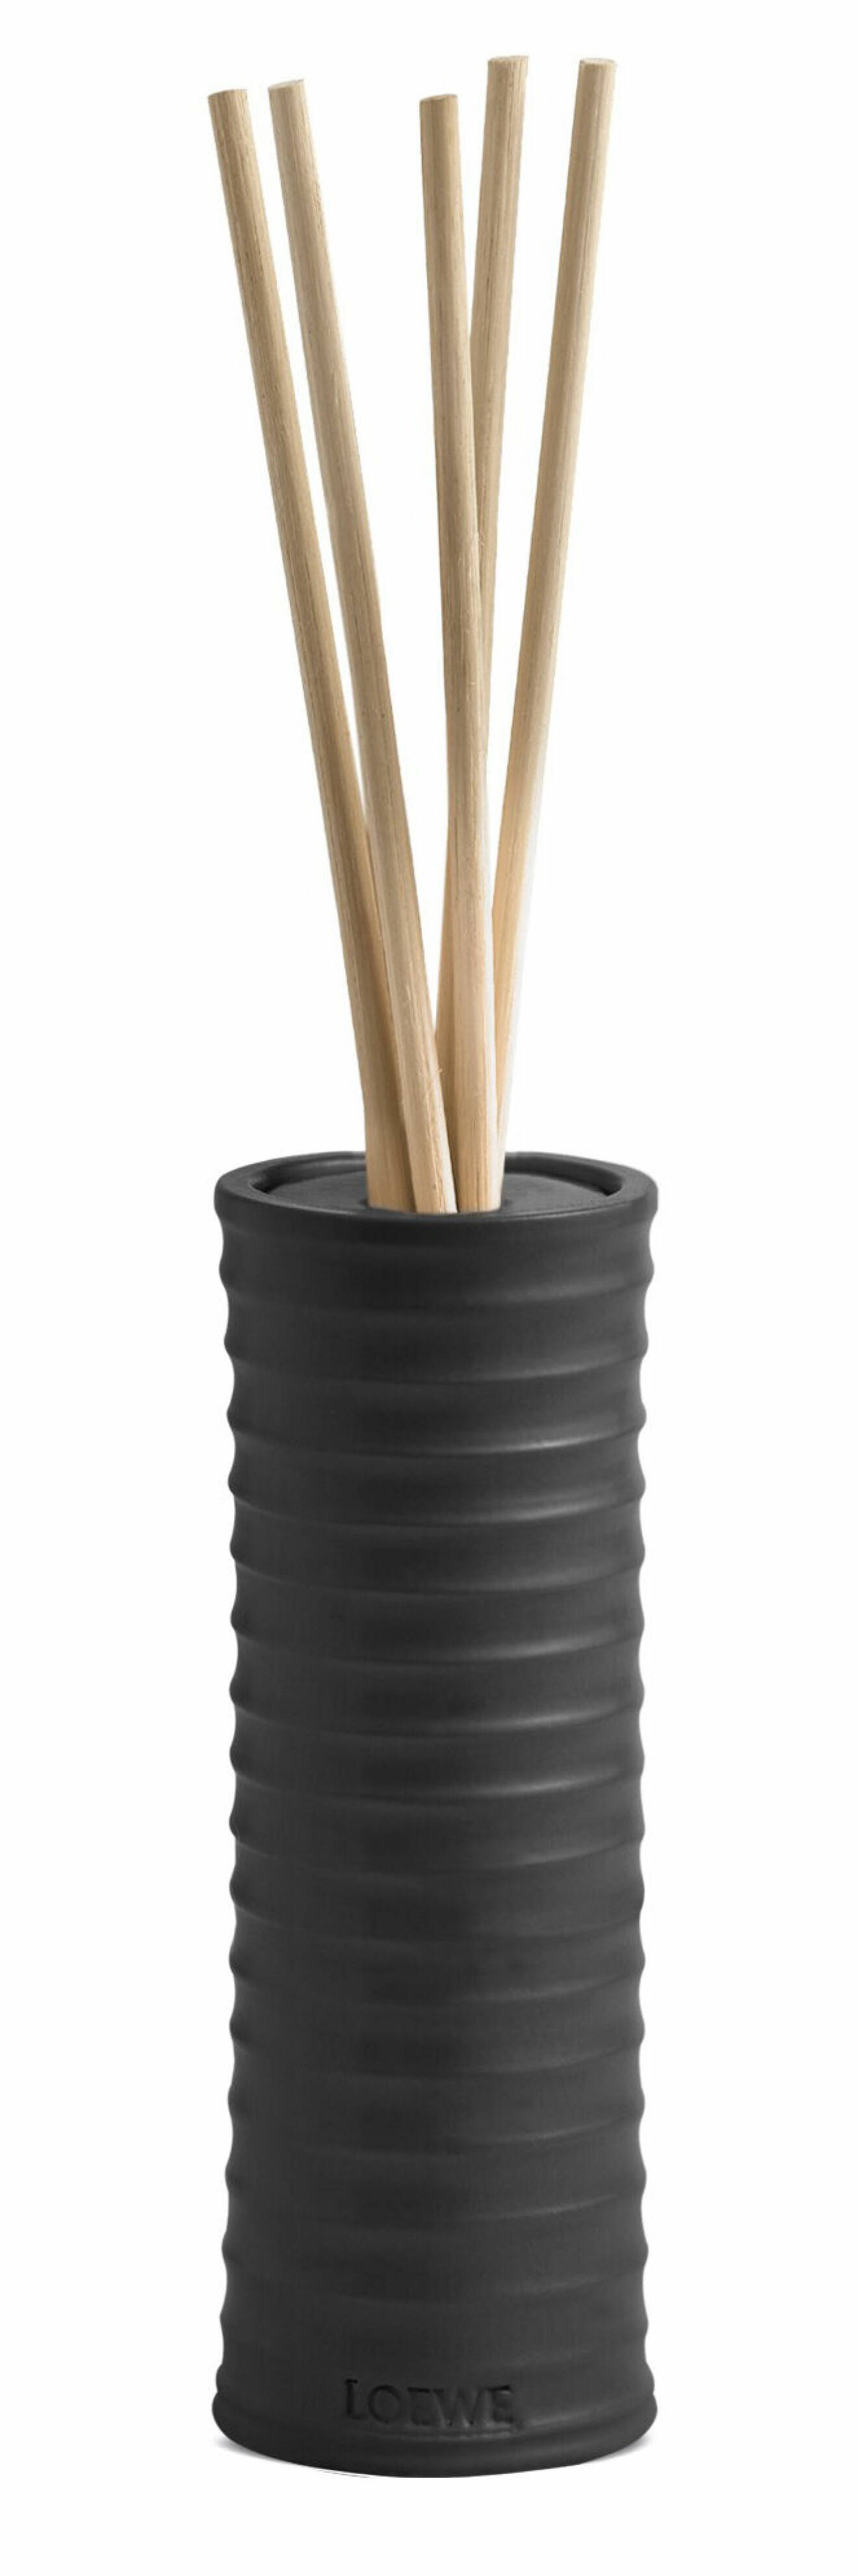 Doftpinnar i svart keramik från Loewe.